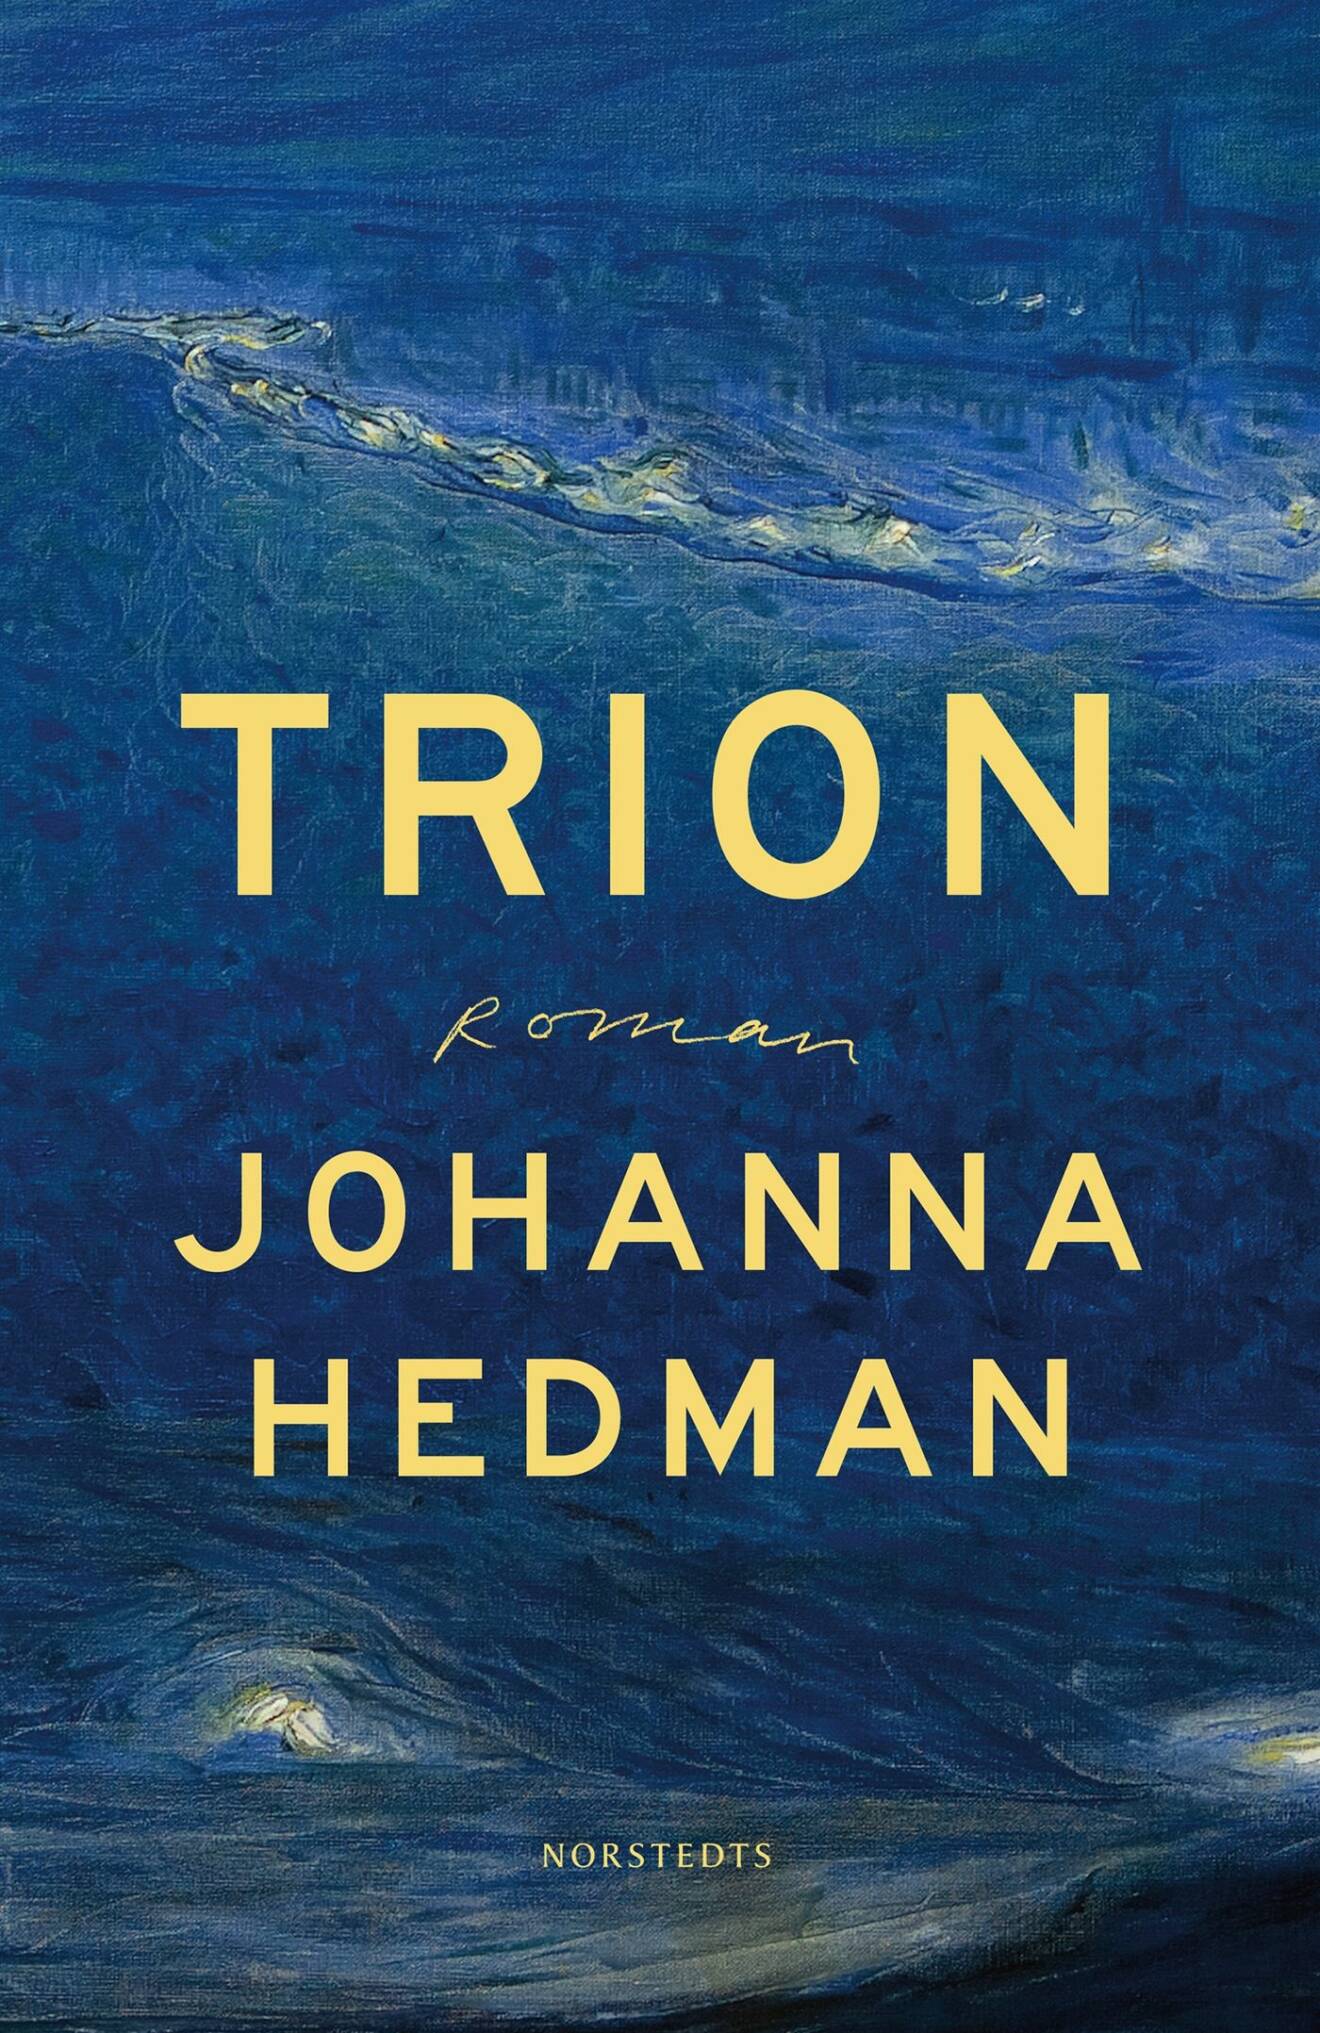 Trion, Johanna Hedman (Norstedts)